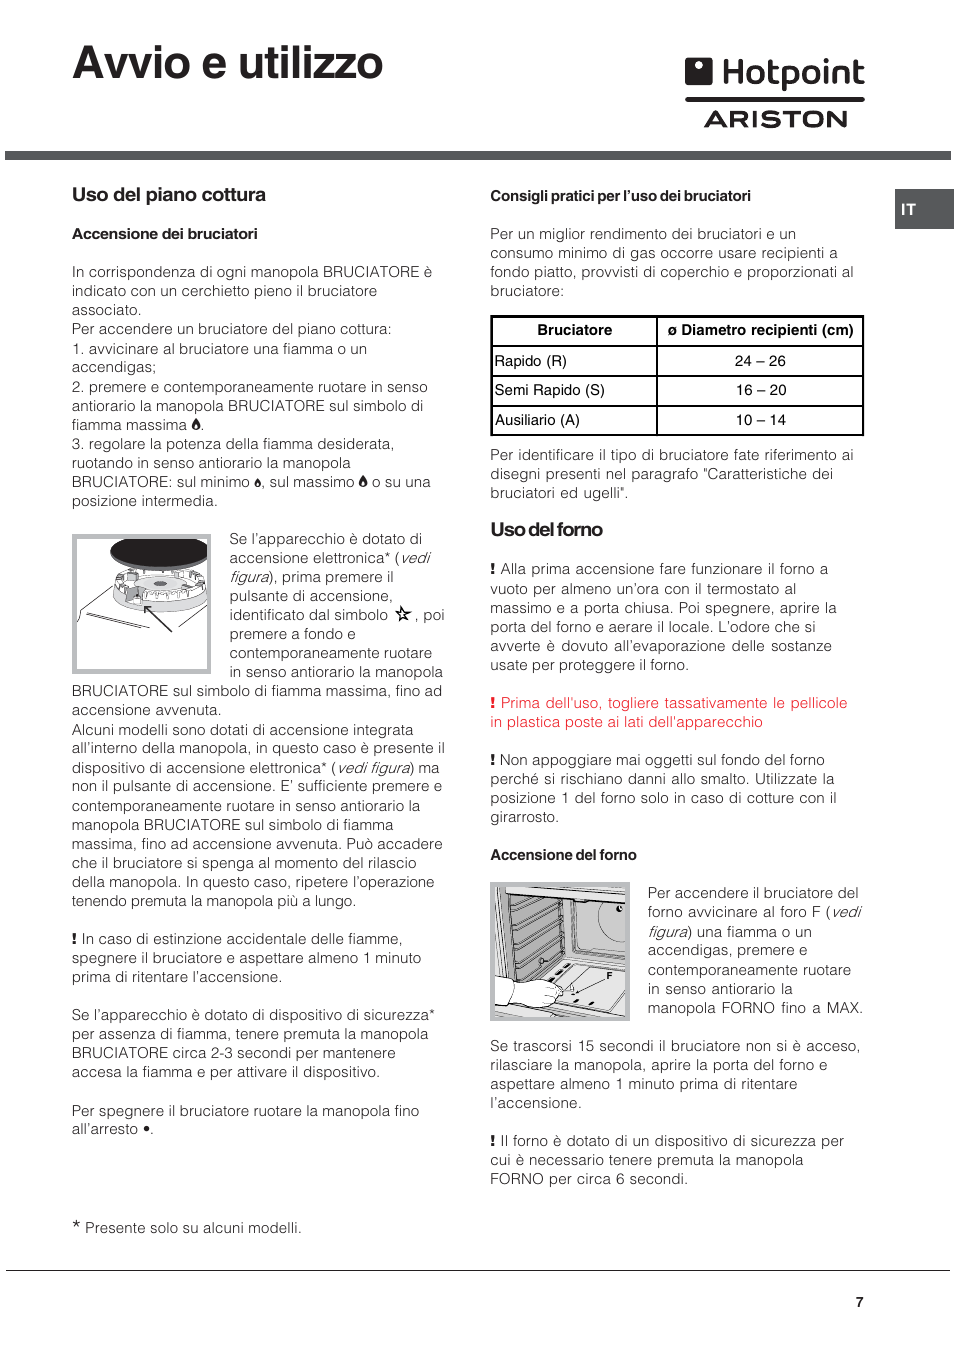 Avvio e utilizzo, Uso del piano cottura, Uso del forno | Hotpoint Ariston C  34S G1 R/HA User Manual | Page 7 / 56